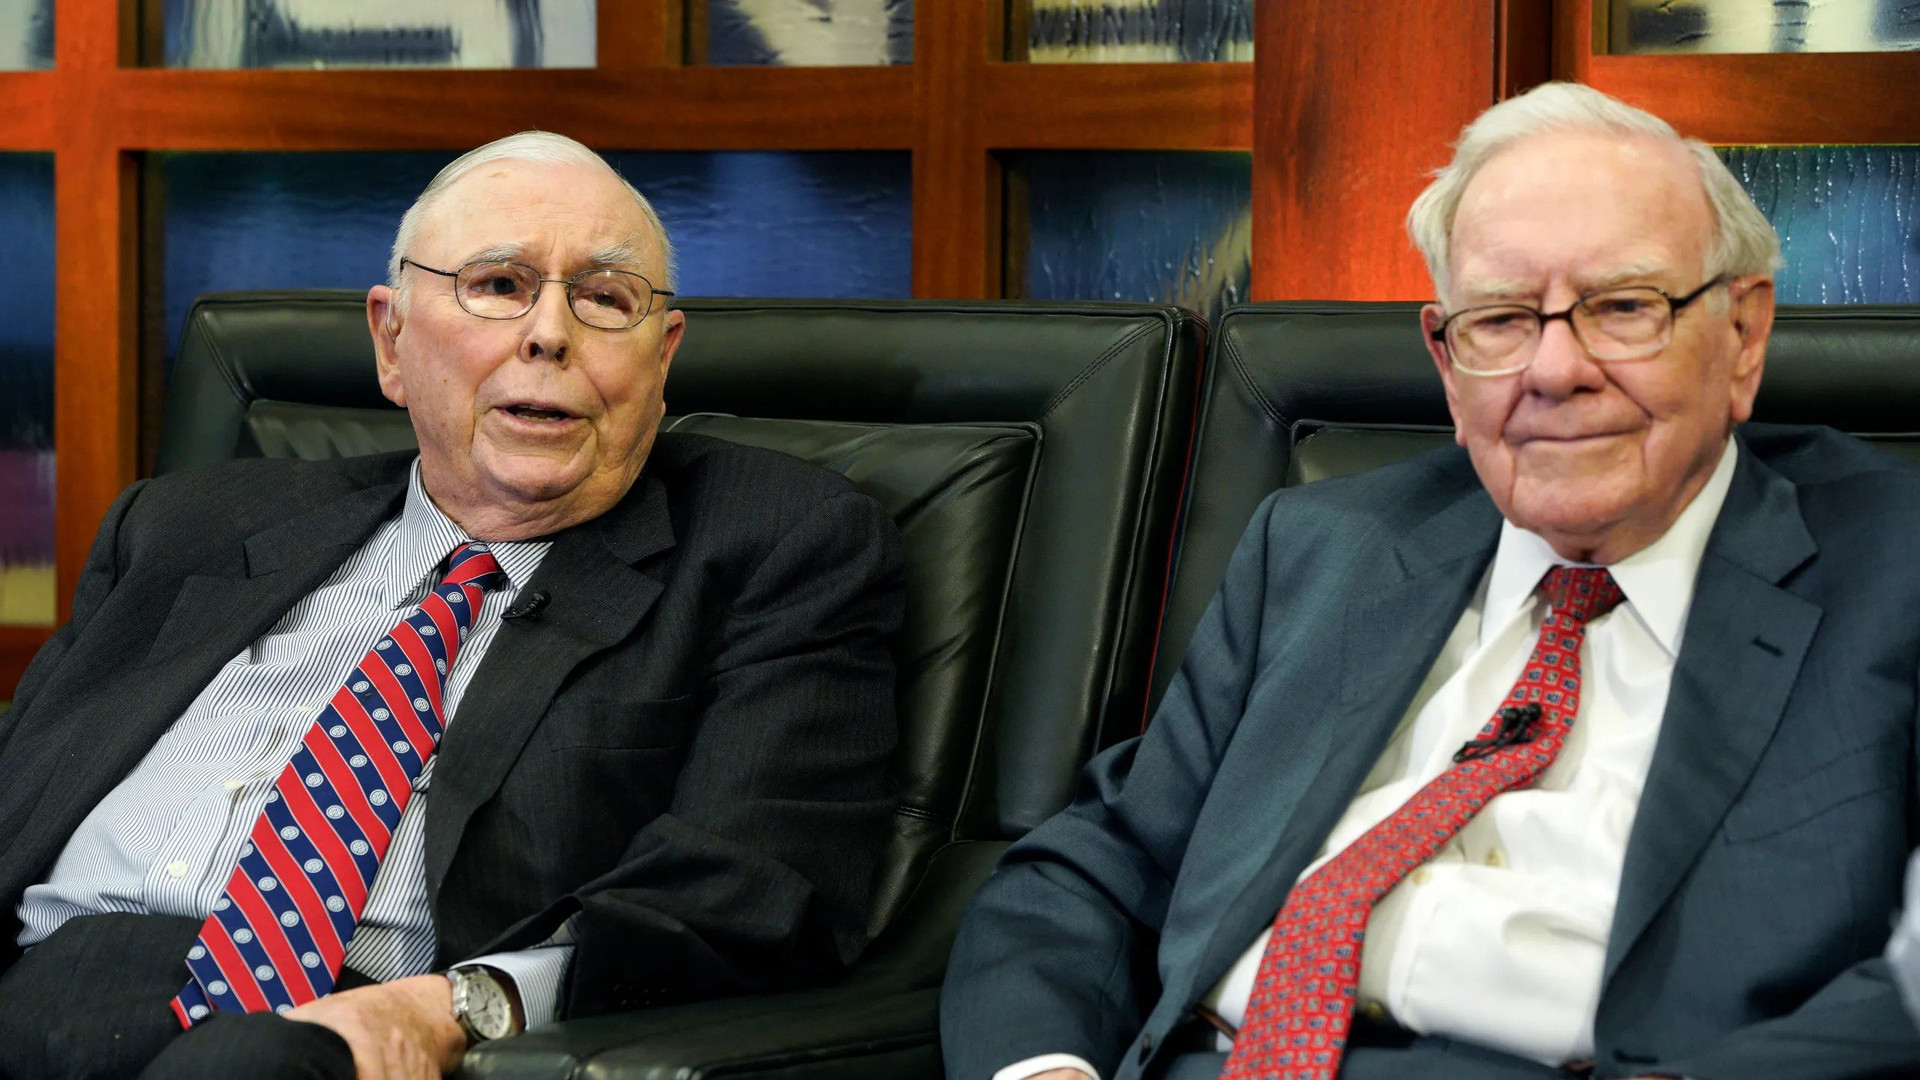 Chủ tịch kiêm Giám đốc điều hành Berkshire Hathaway Warren Buffett (phải) và Phó Chủ tịch Charlie Munger (trái). Ảnh: AP/Nati Harnik, File